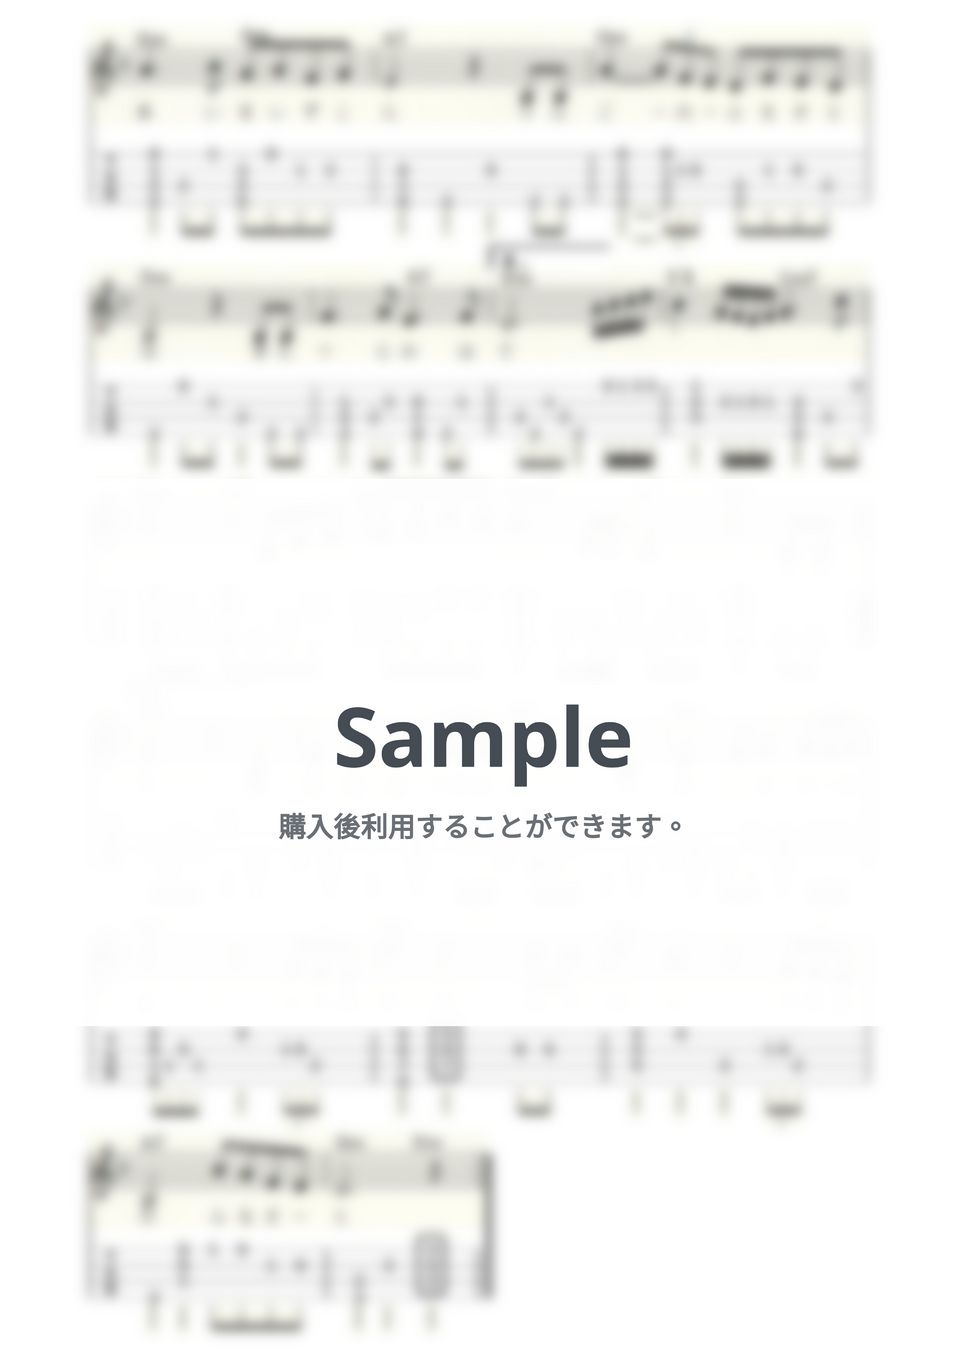 美空ひばり - 津軽のふるさと (ｳｸﾚﾚｿﾛ/Low-G/中級) by ukulelepapa